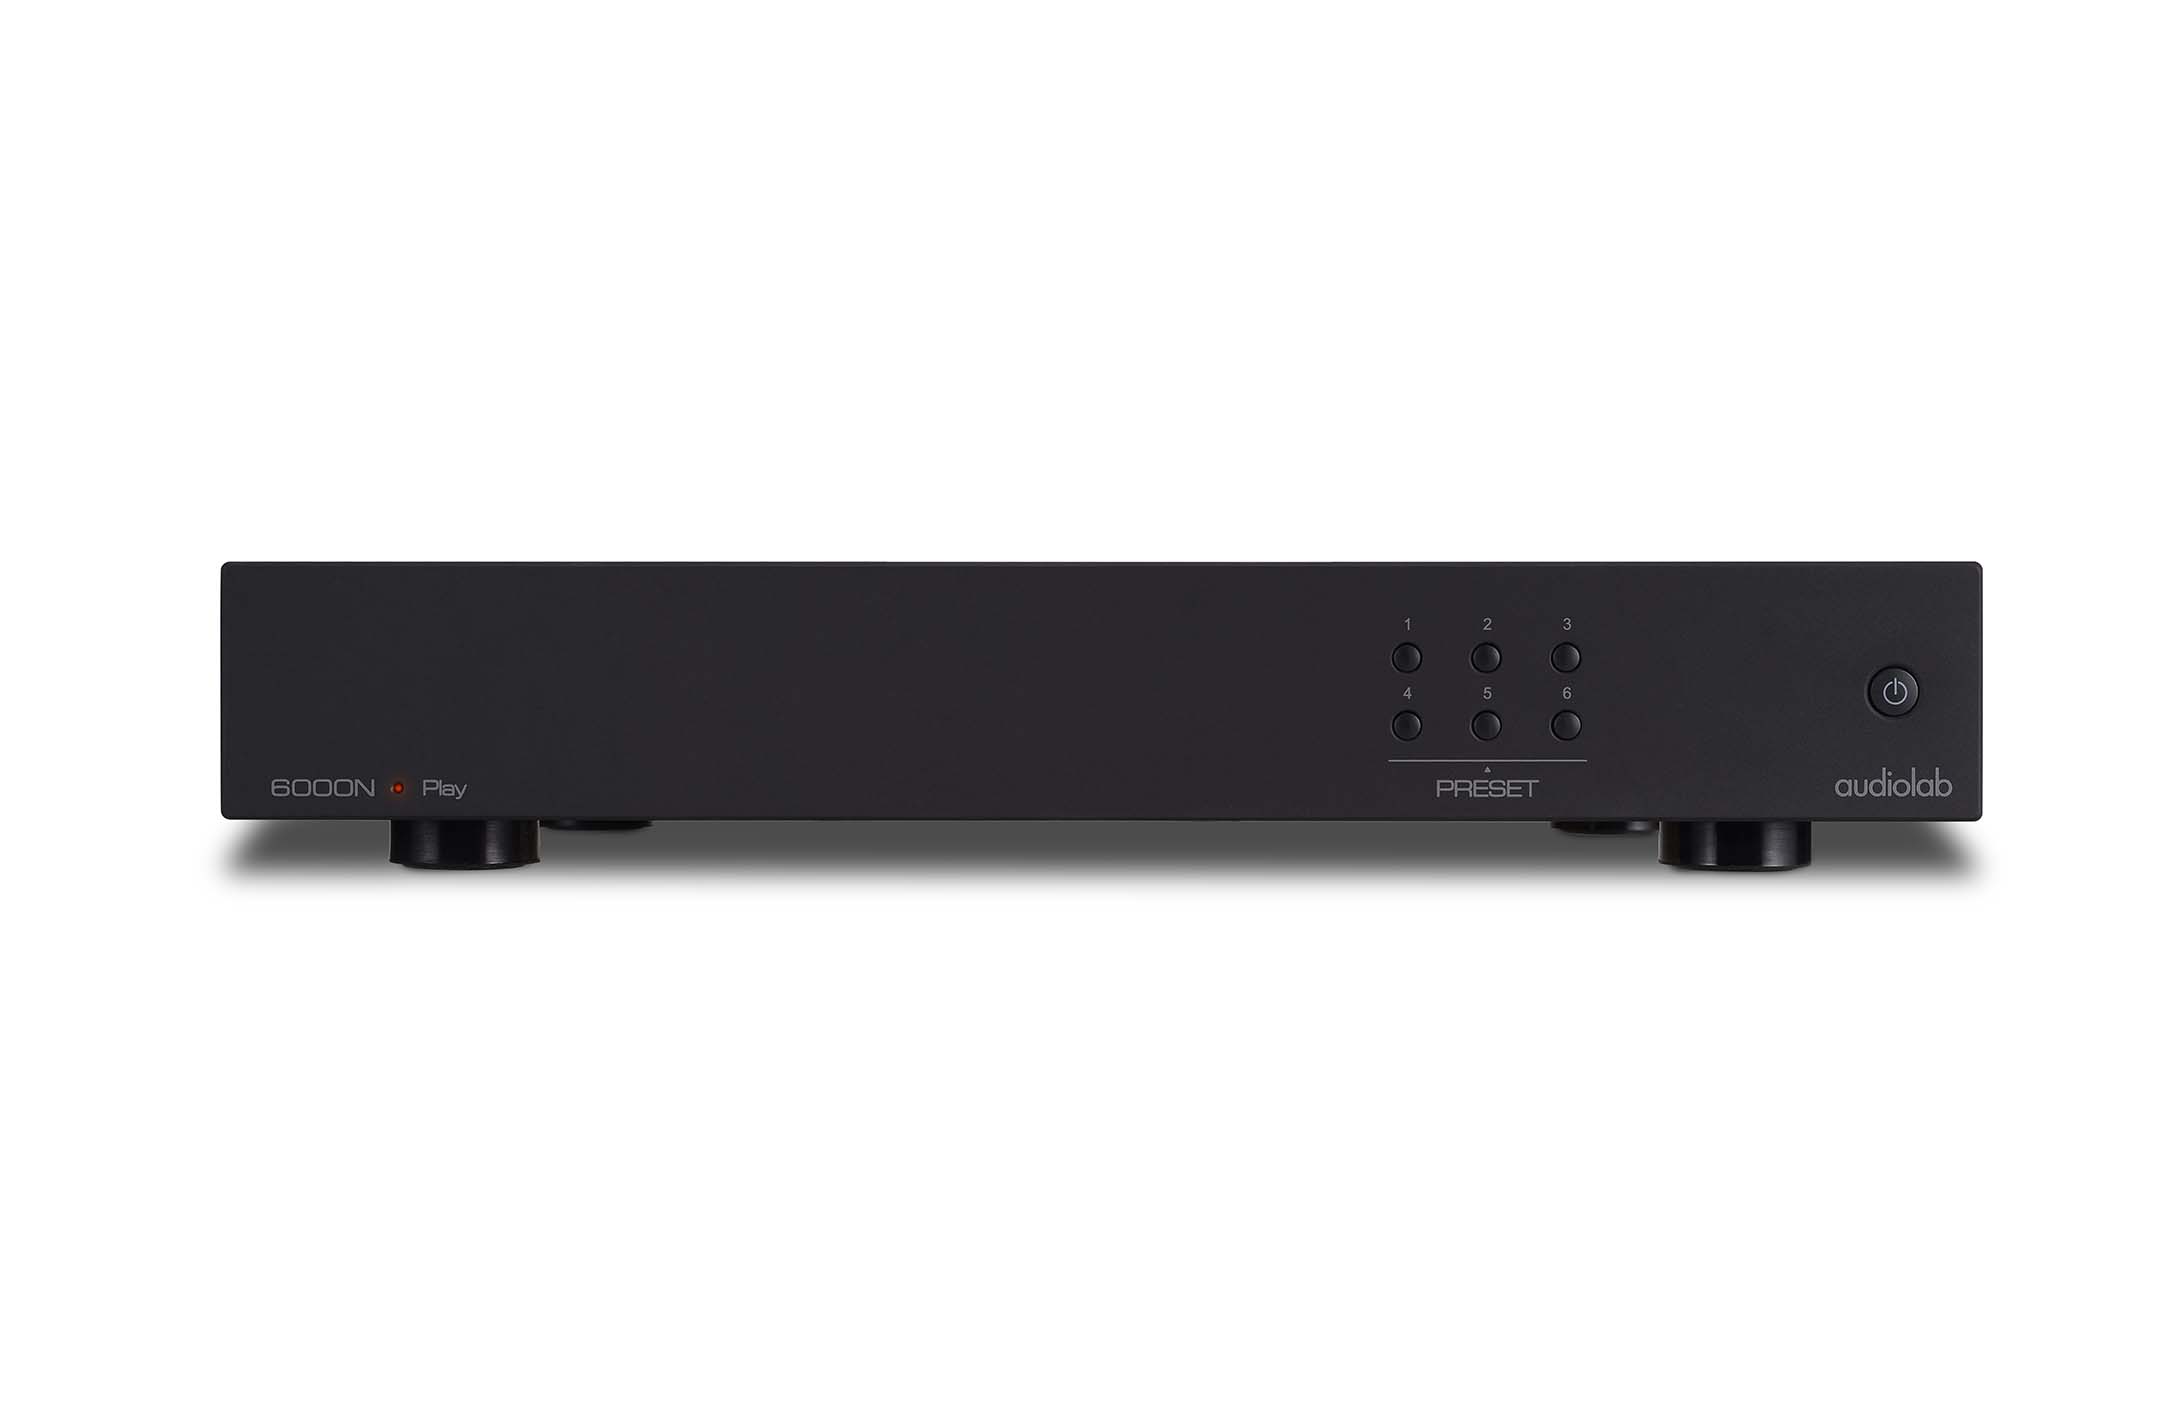 6000N Play - Audio Streamer - Audiolab